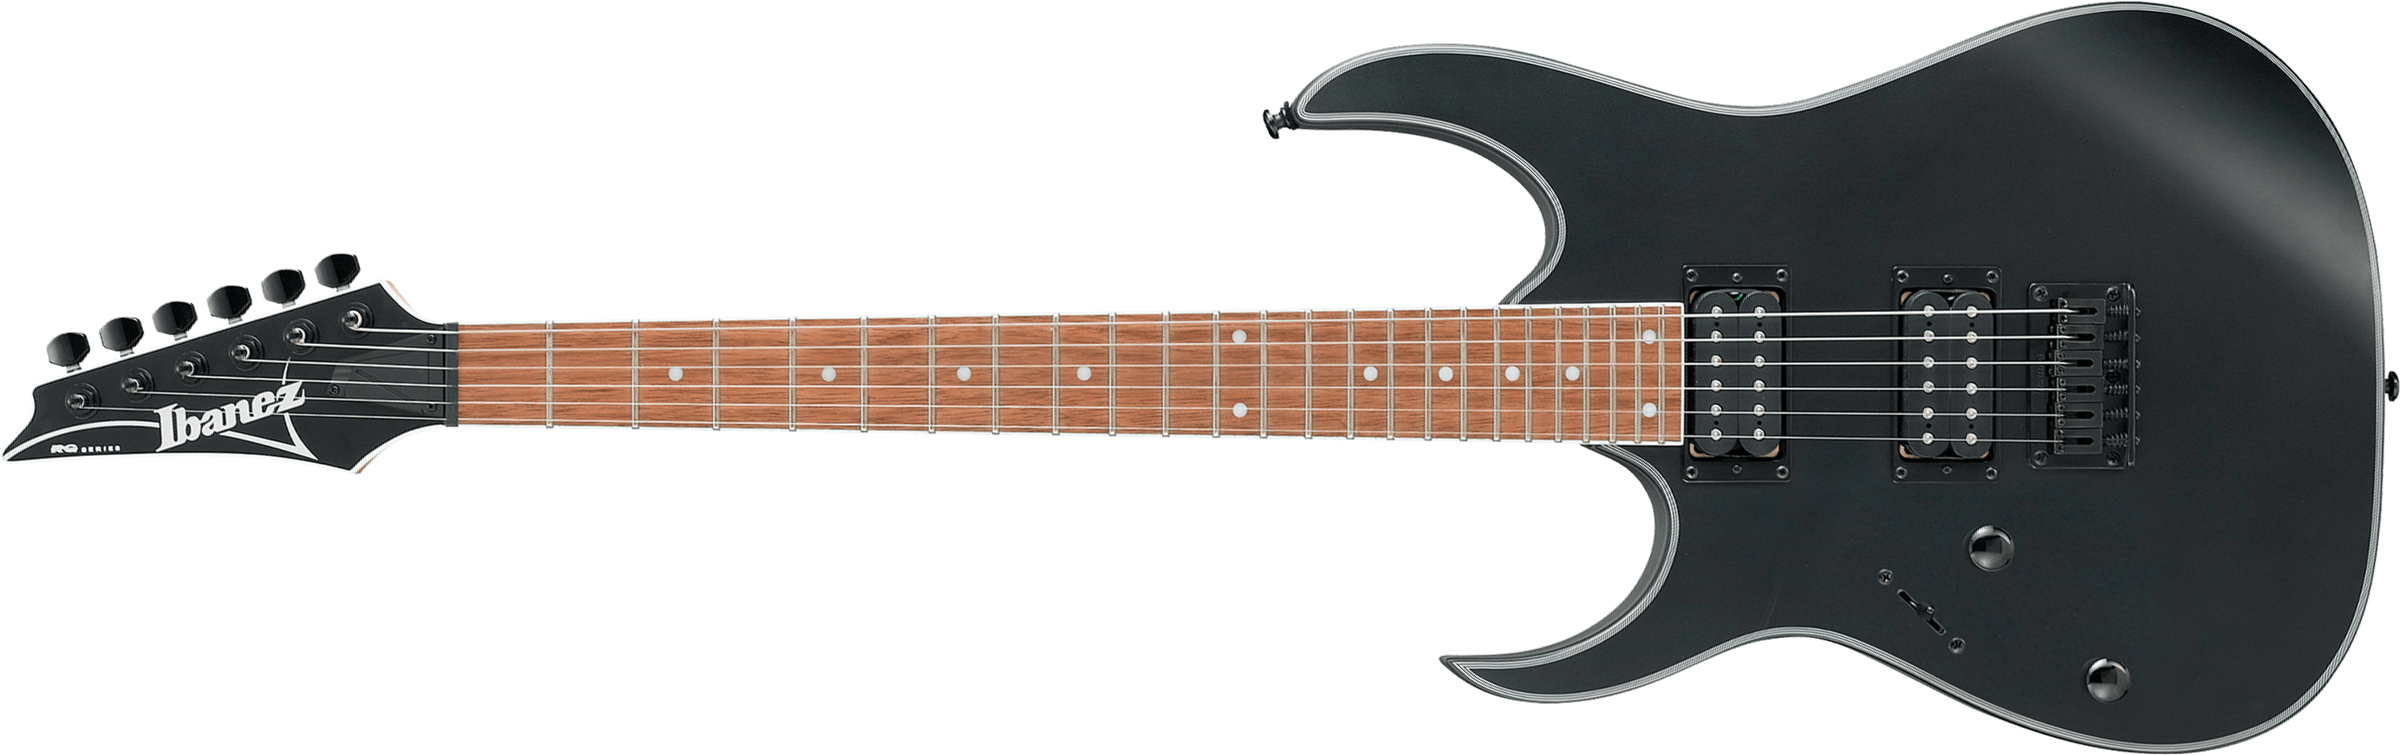 Ibanez Rg421exl Bkf Lh Gaucher Standard Hh Ht Jat - Black - Linkshandige elektrische gitaar - Main picture